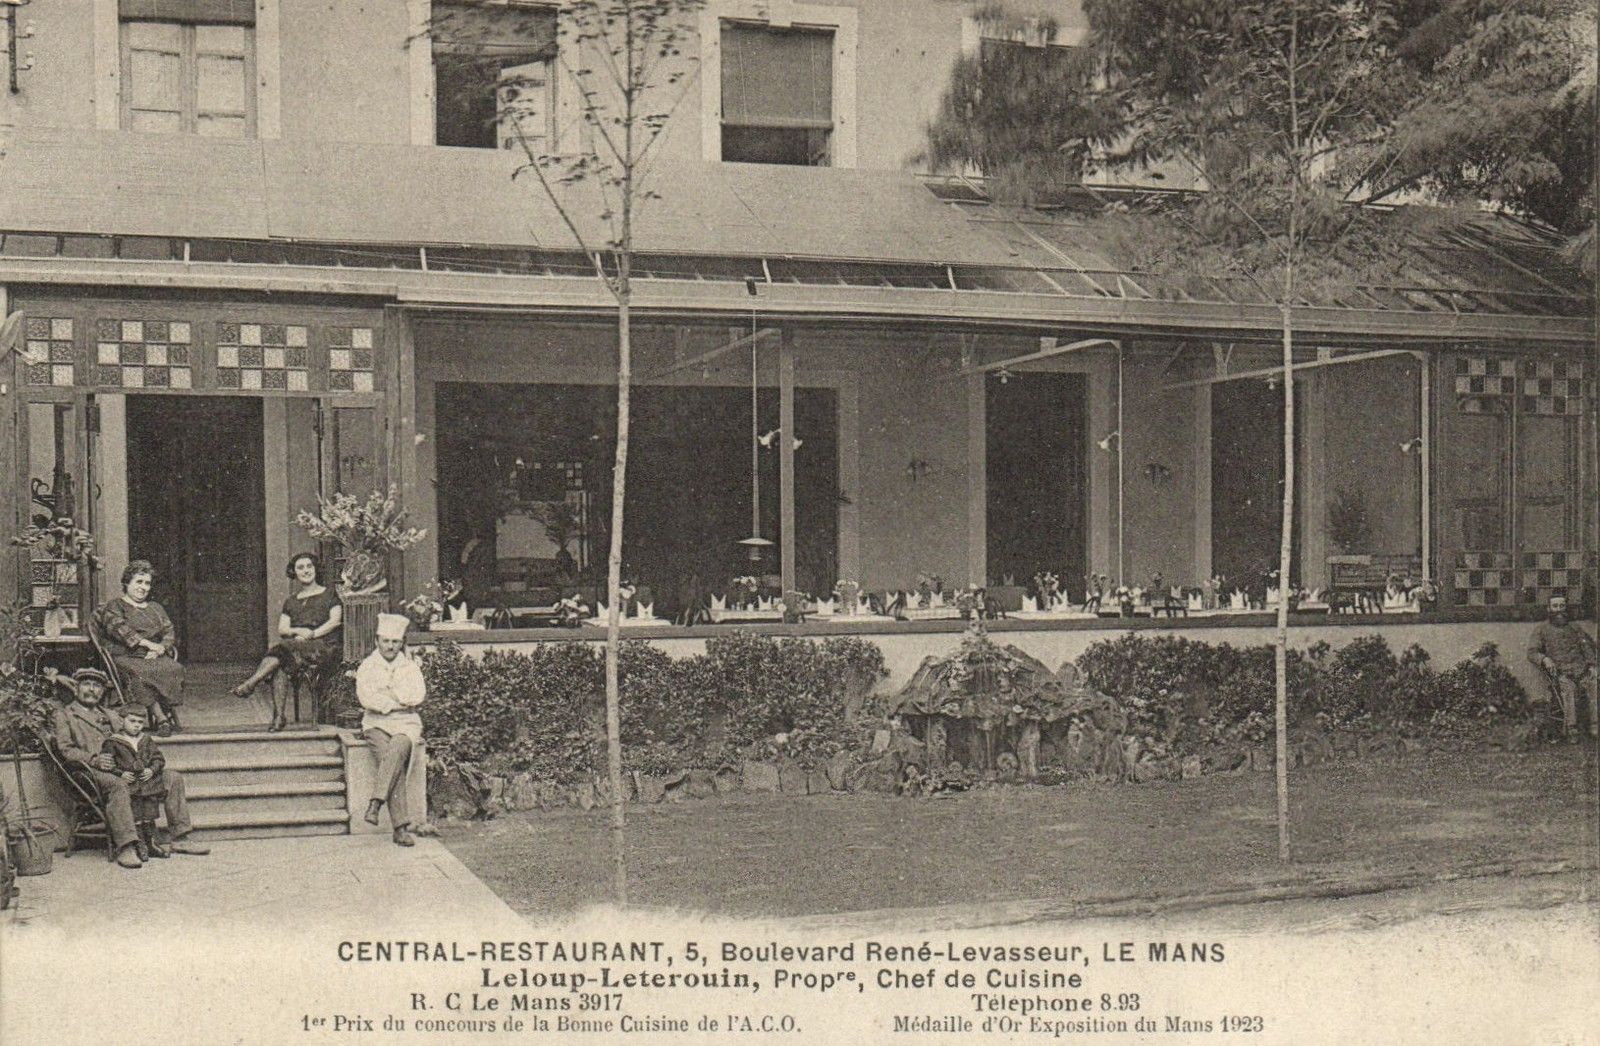 Le Mans - Central Restaurant - 5 boulevard René Levasseur - Leloup Leterouin